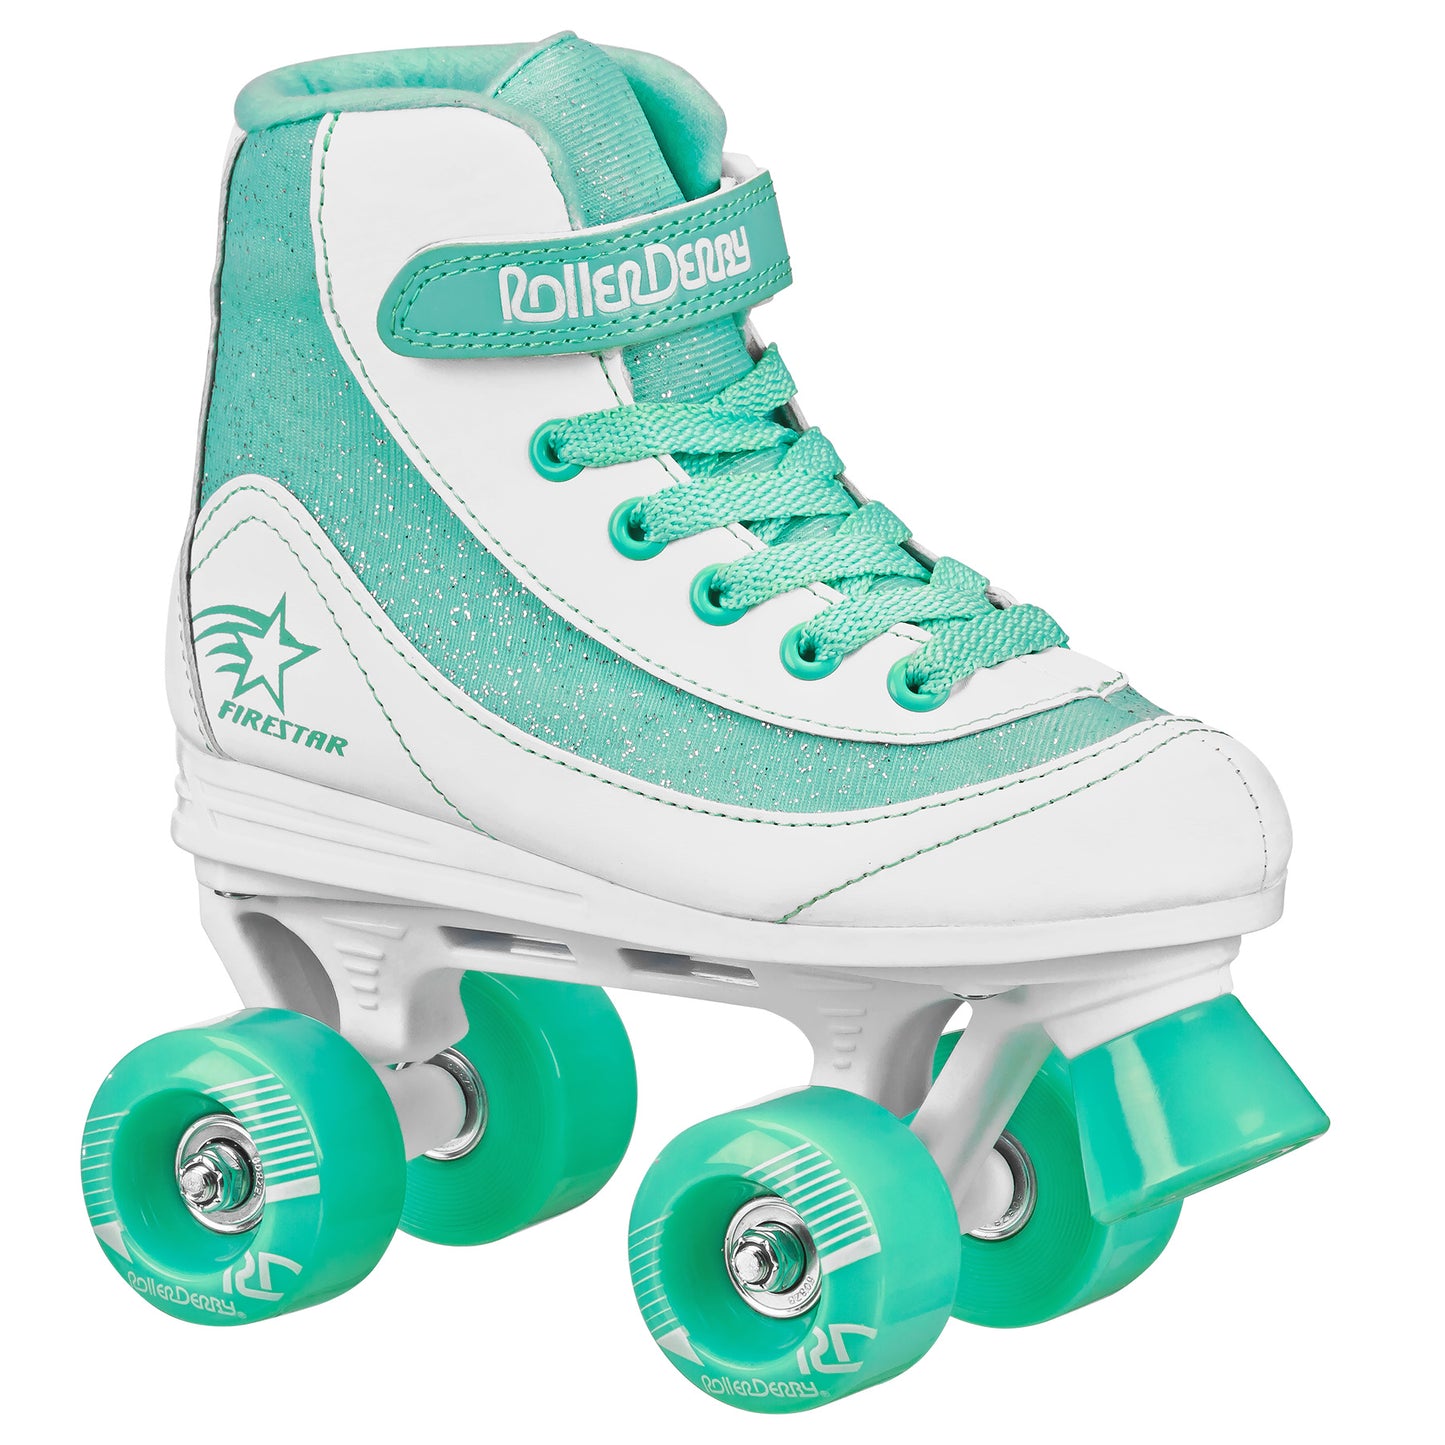 FireStar Youth Girl's Roller Skates